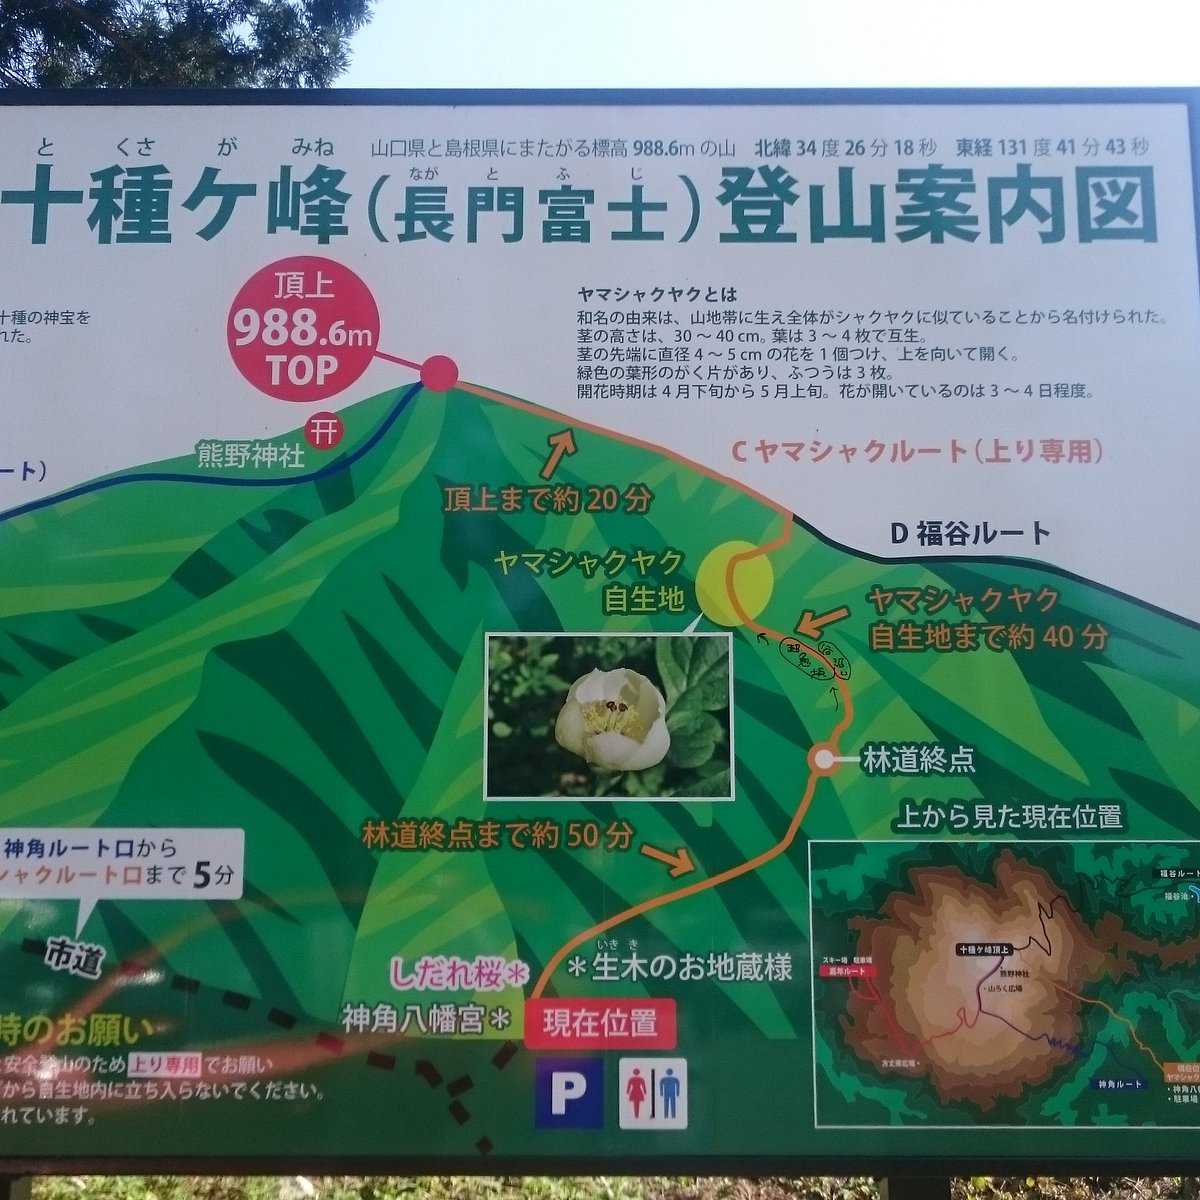 Tokusagamine Wood Park Yamaguchi 22 Ce Qu Il Faut Savoir Pour Votre Visite Tripadvisor